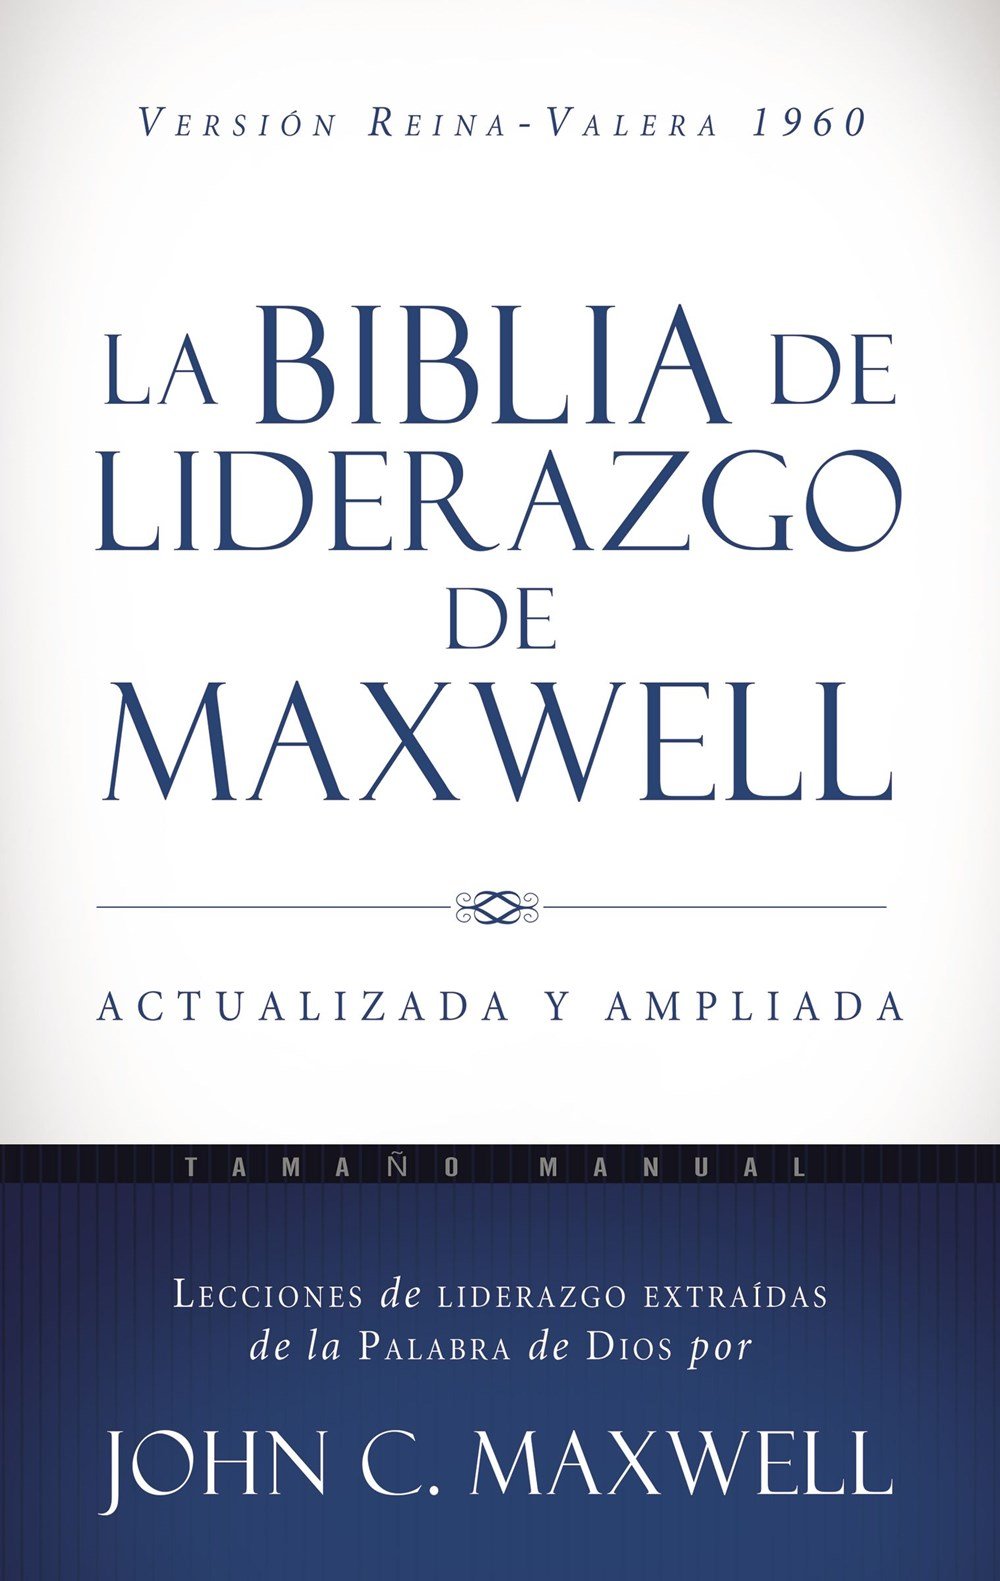 La Biblia de liderazgo de Maxwell RVR60 Tama�o manual>